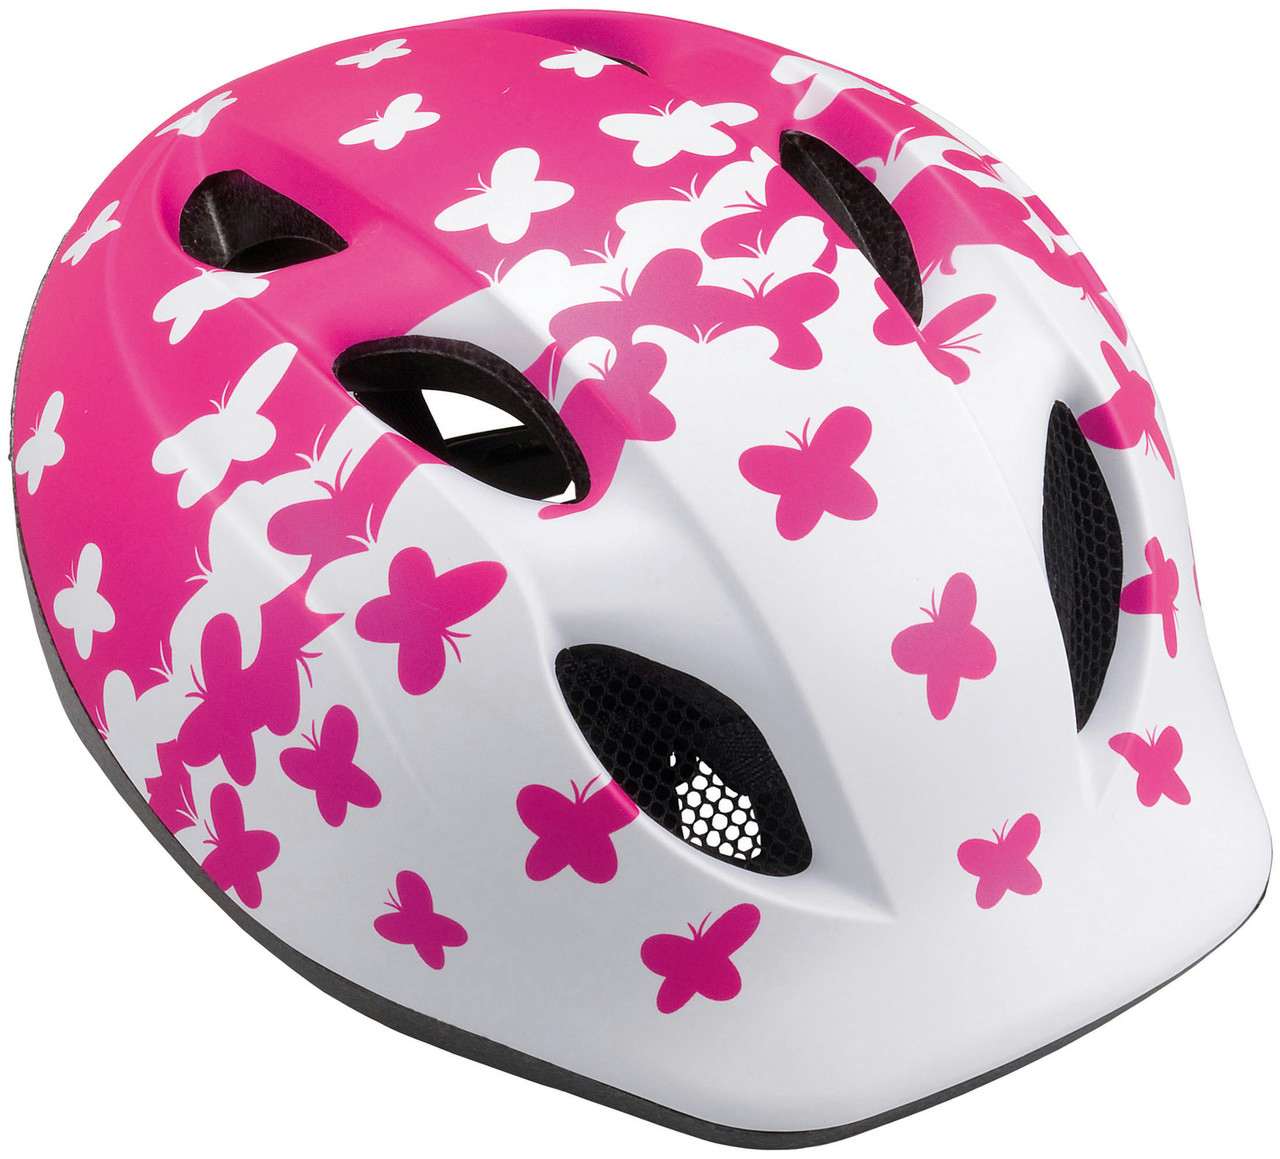 Buddy Helmet Pink Butterflies